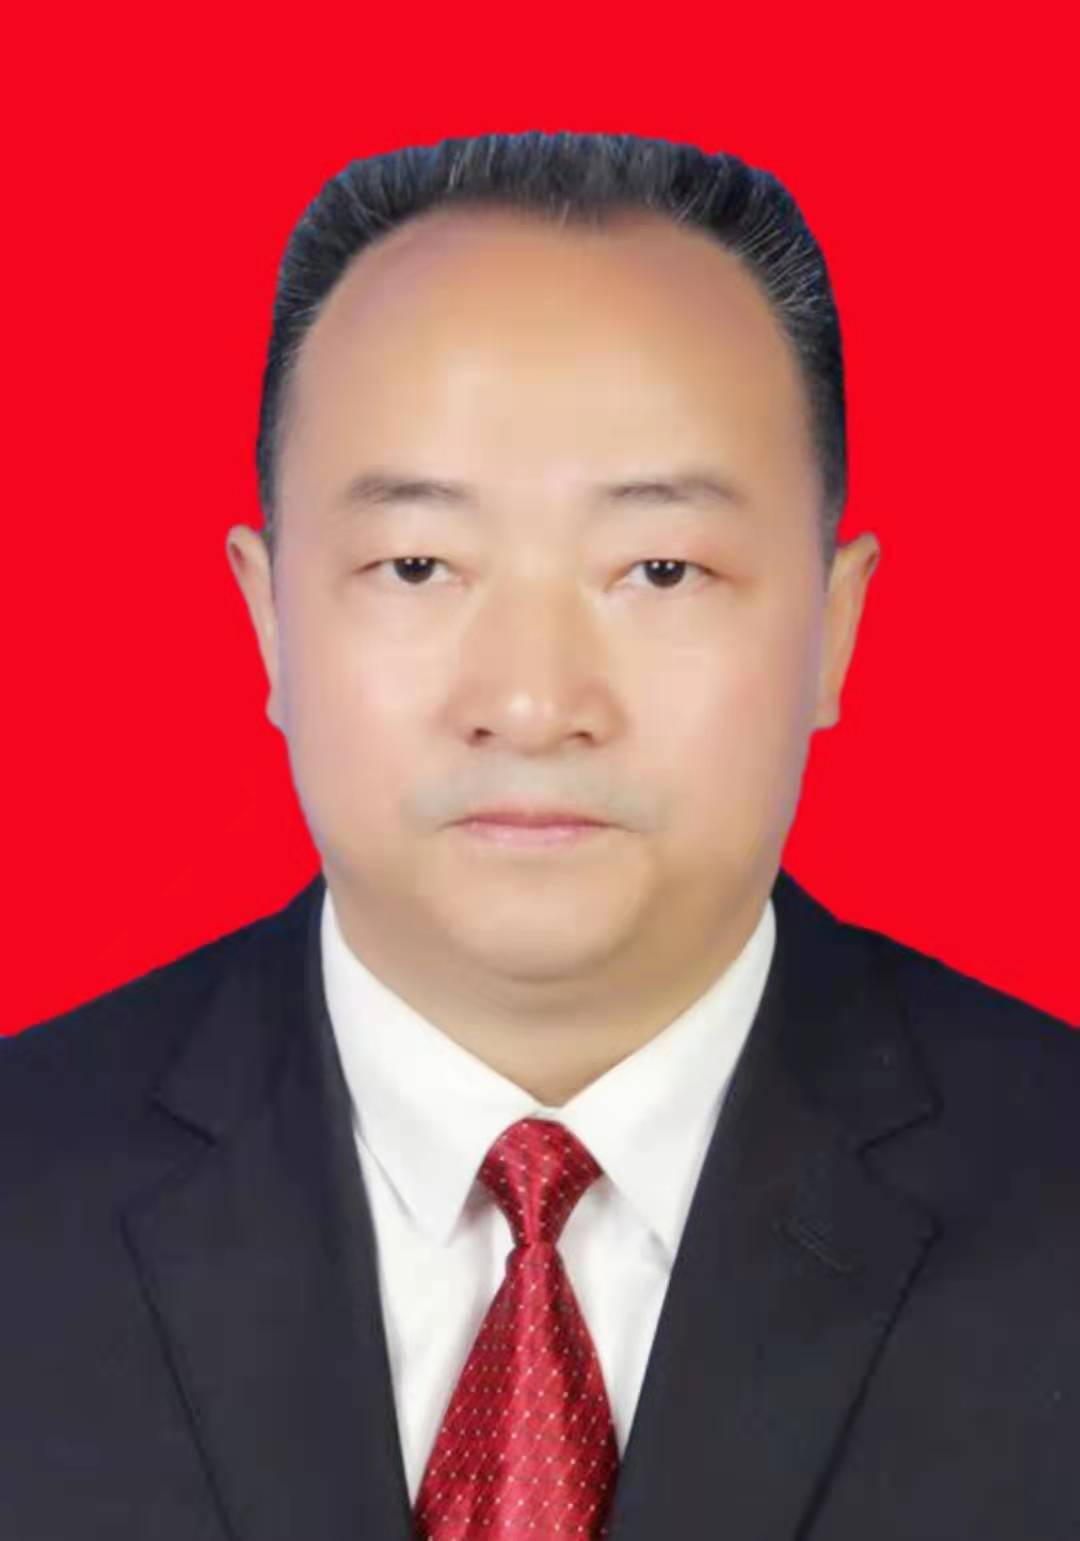 蓬安县天然气公司副经理 祝正森